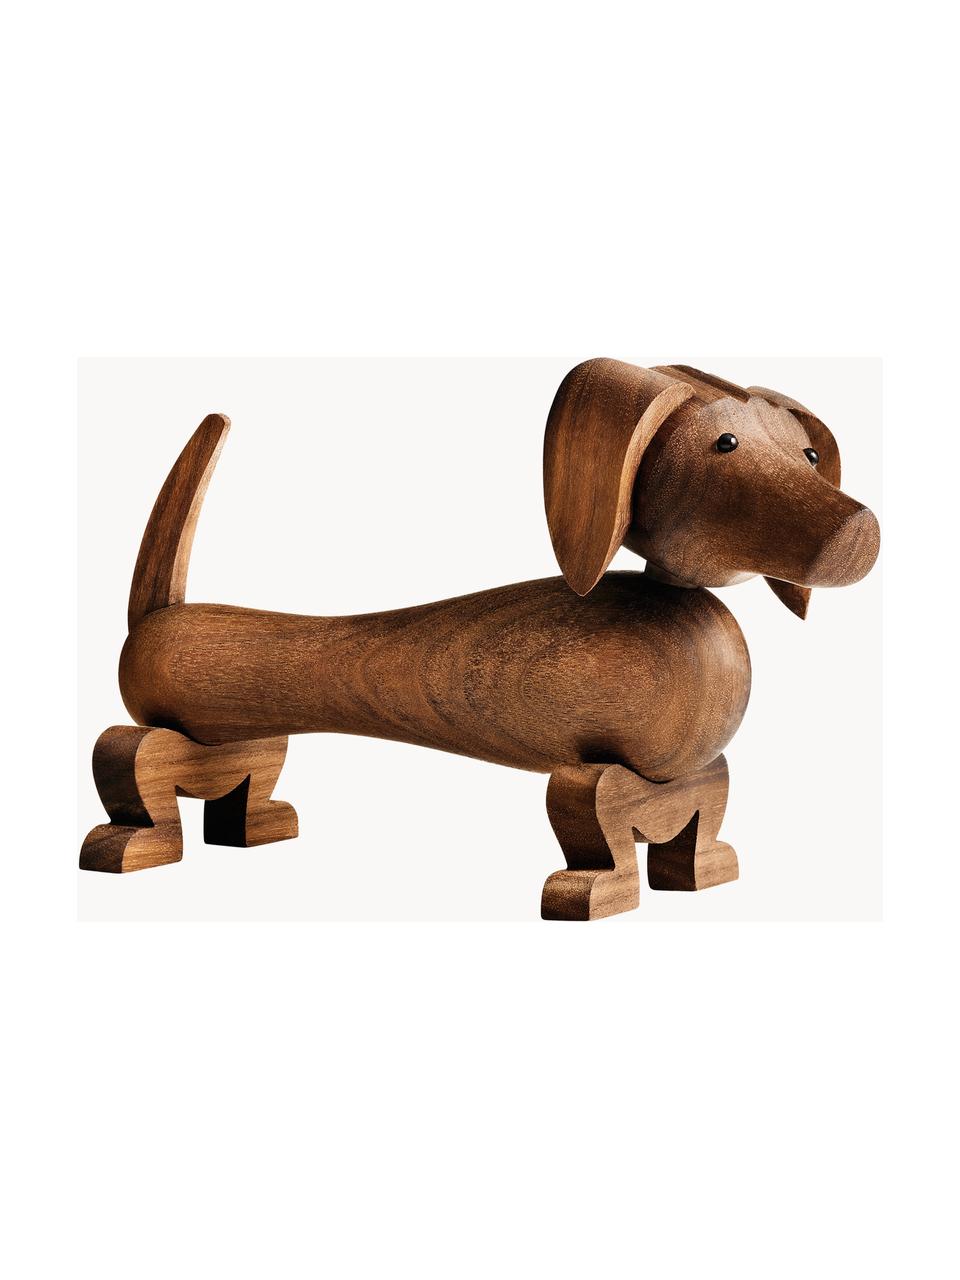 Dekoracja z drewna orzecha włoskiego Hund, Drewno orzecha włoskiego, Brązowy, S 18 x W 11  cm